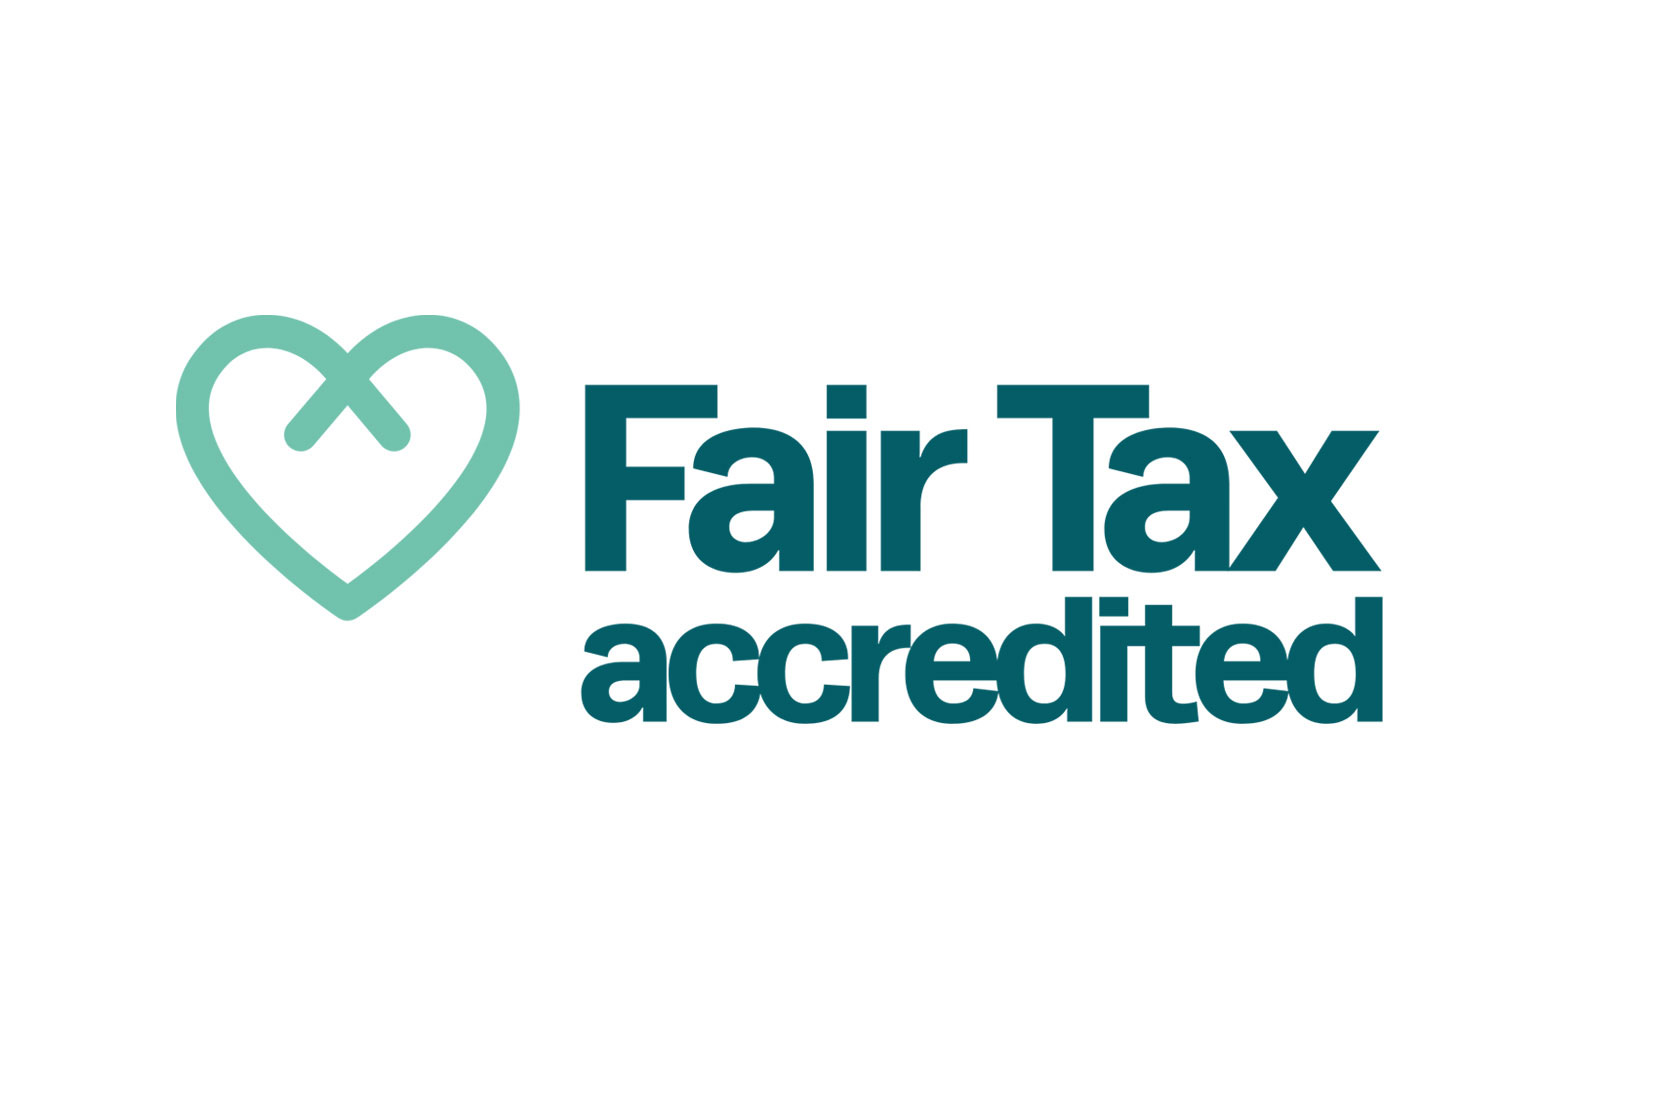 The Fair Tax logo.